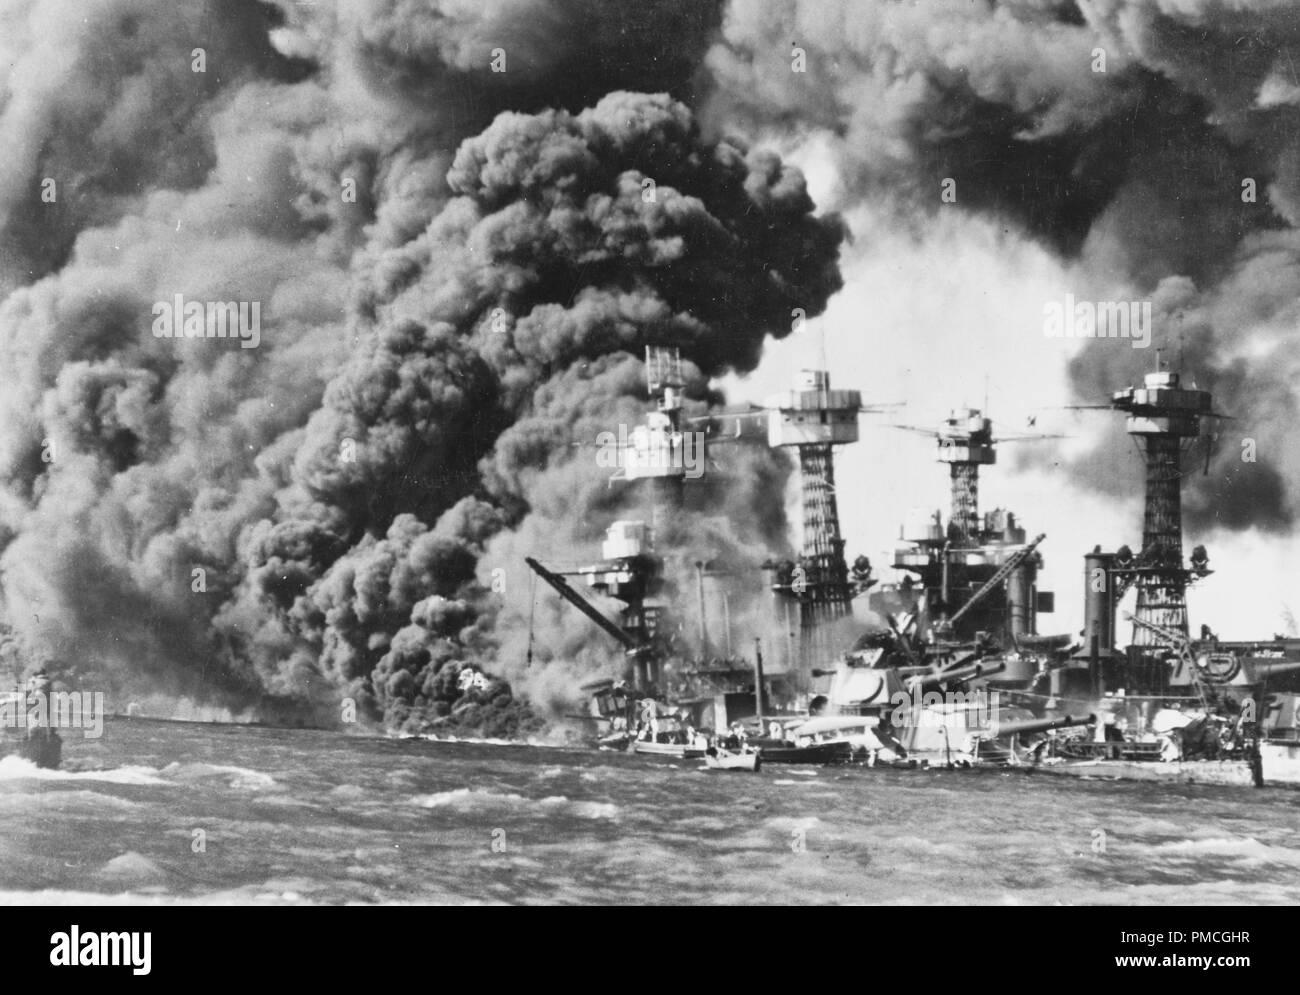 USS West Virginia (BB-48) Le feu de l'avant, immédiatement après l'attaque aérienne japonaise. USS California (BB-43) est sur l'épave du cuirassé du côté opposé. Attaque japonaise sur Pearl Harbor, le 7 décembre, 1941 Banque D'Images